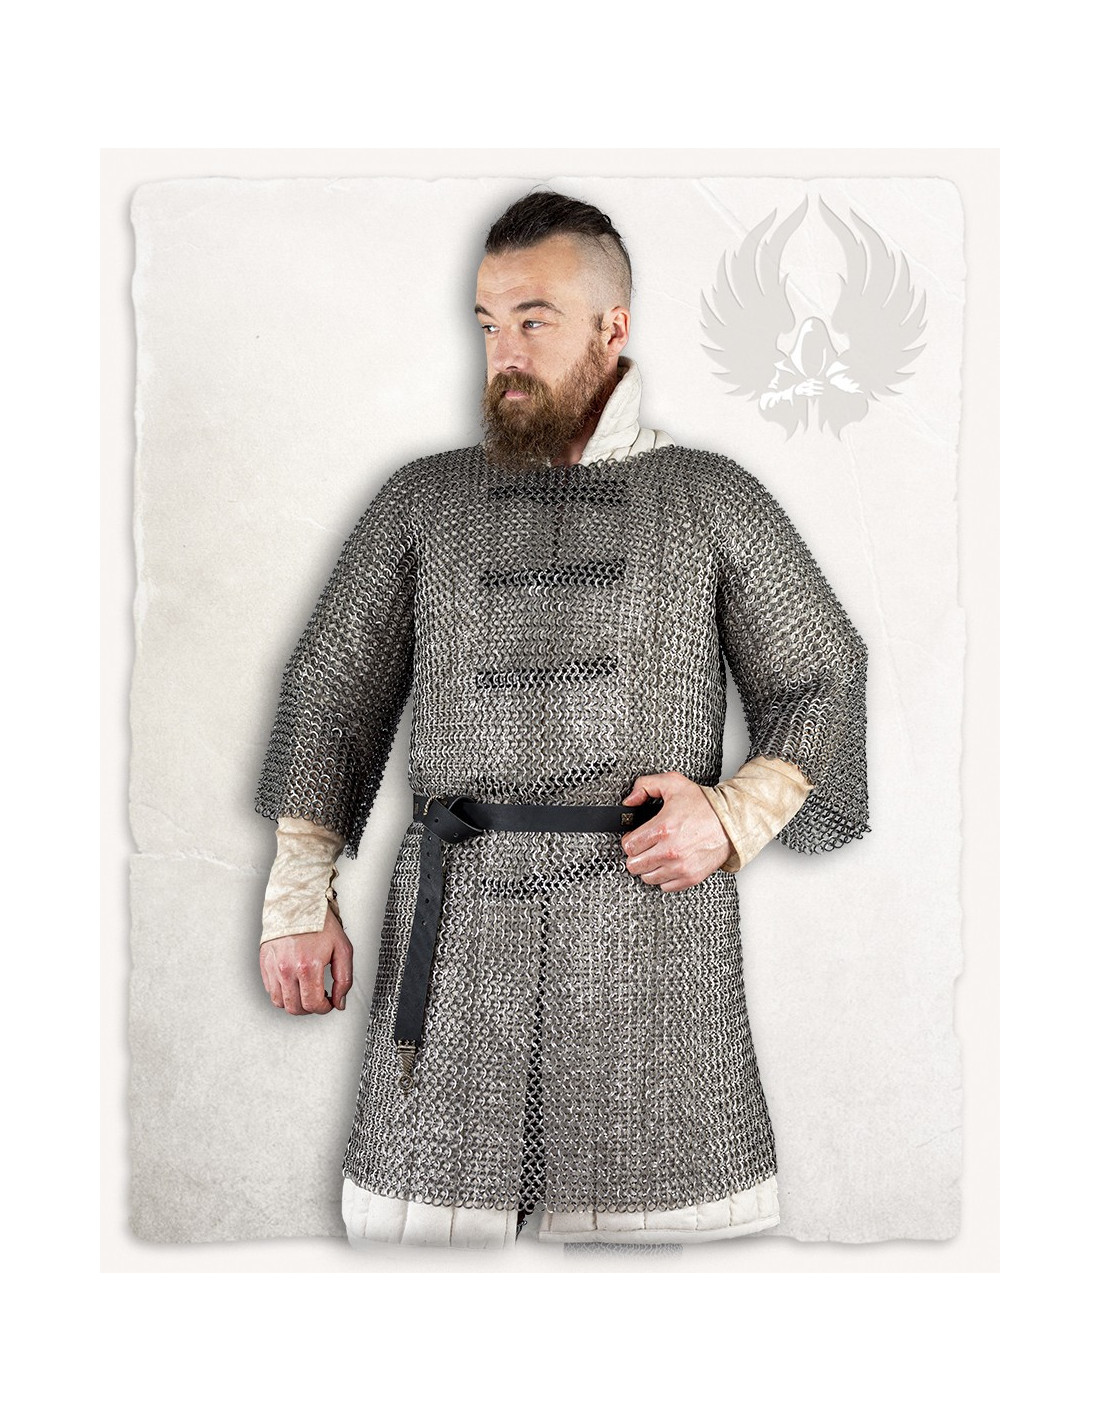 Cotta di maglia medievale modello John, finitura in acciaio lucido